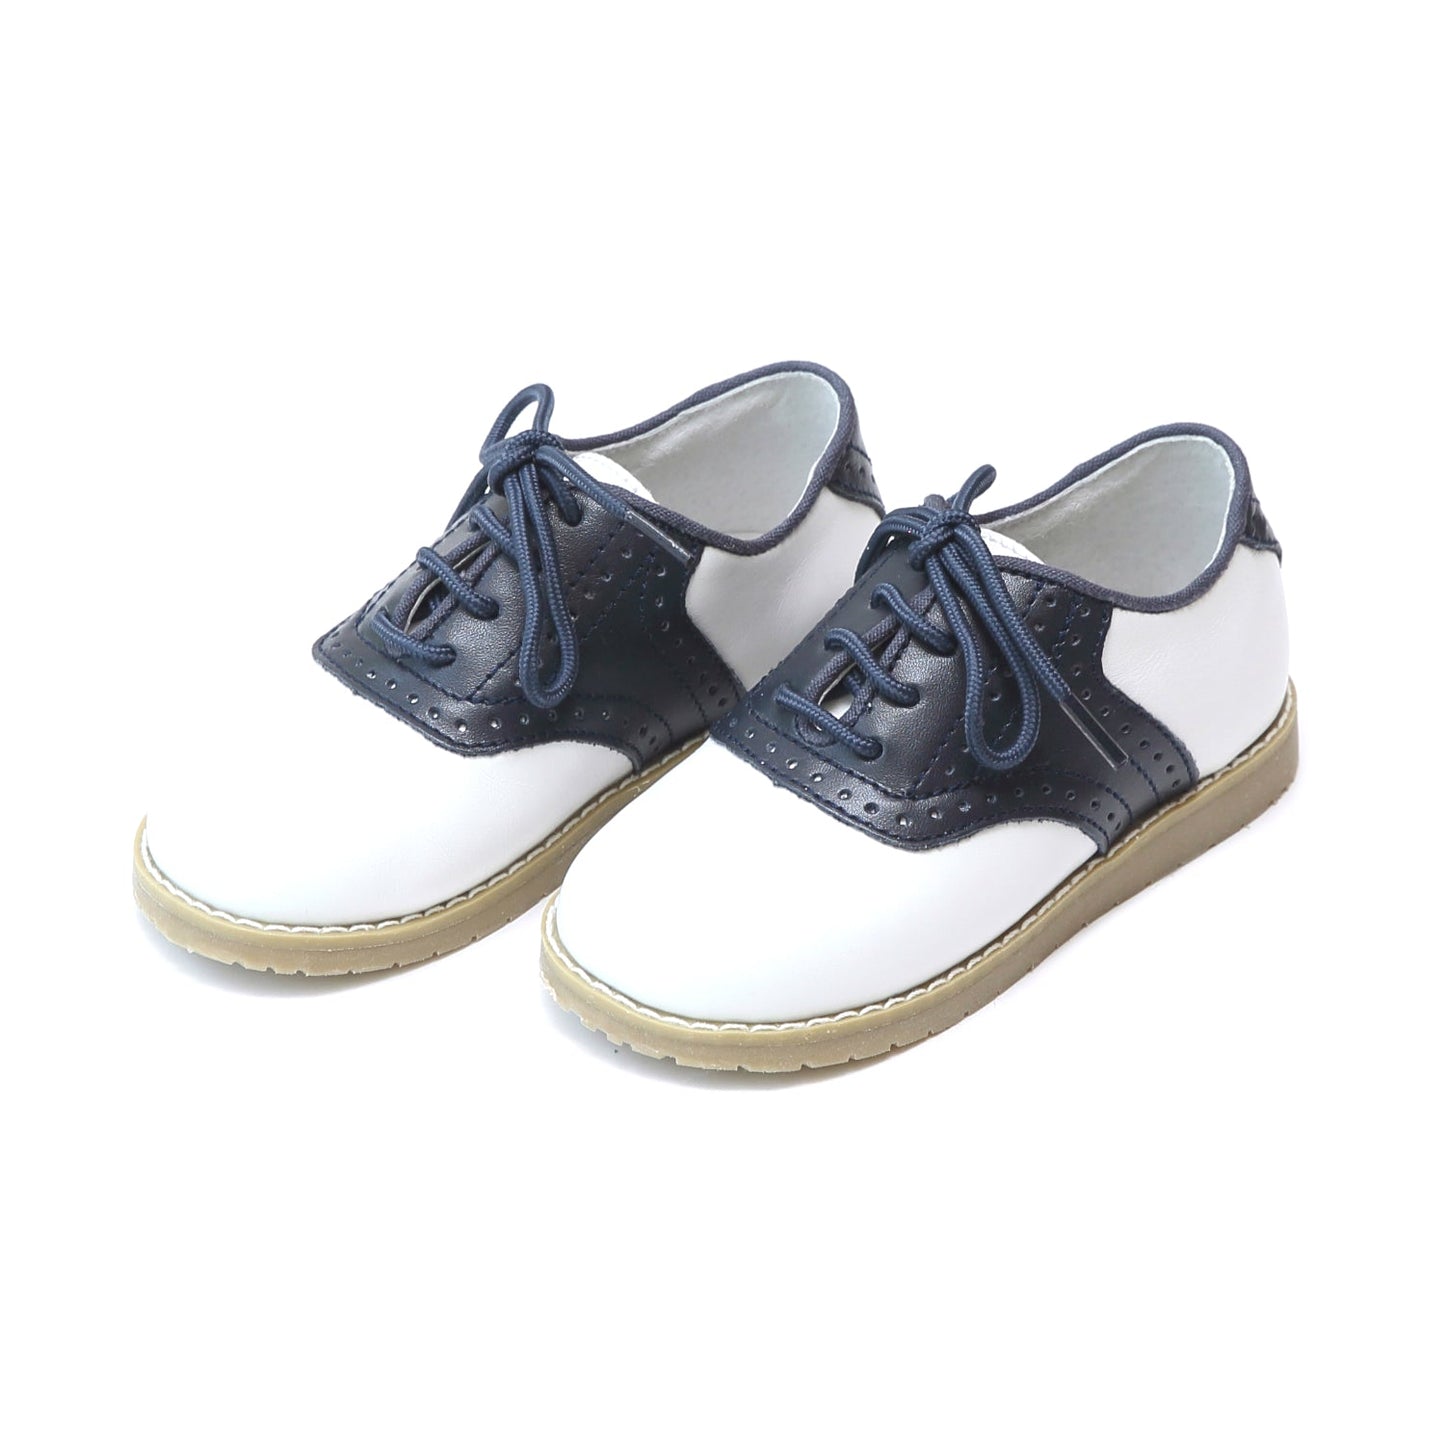 L'Amour White/Navy Saddle Shoe